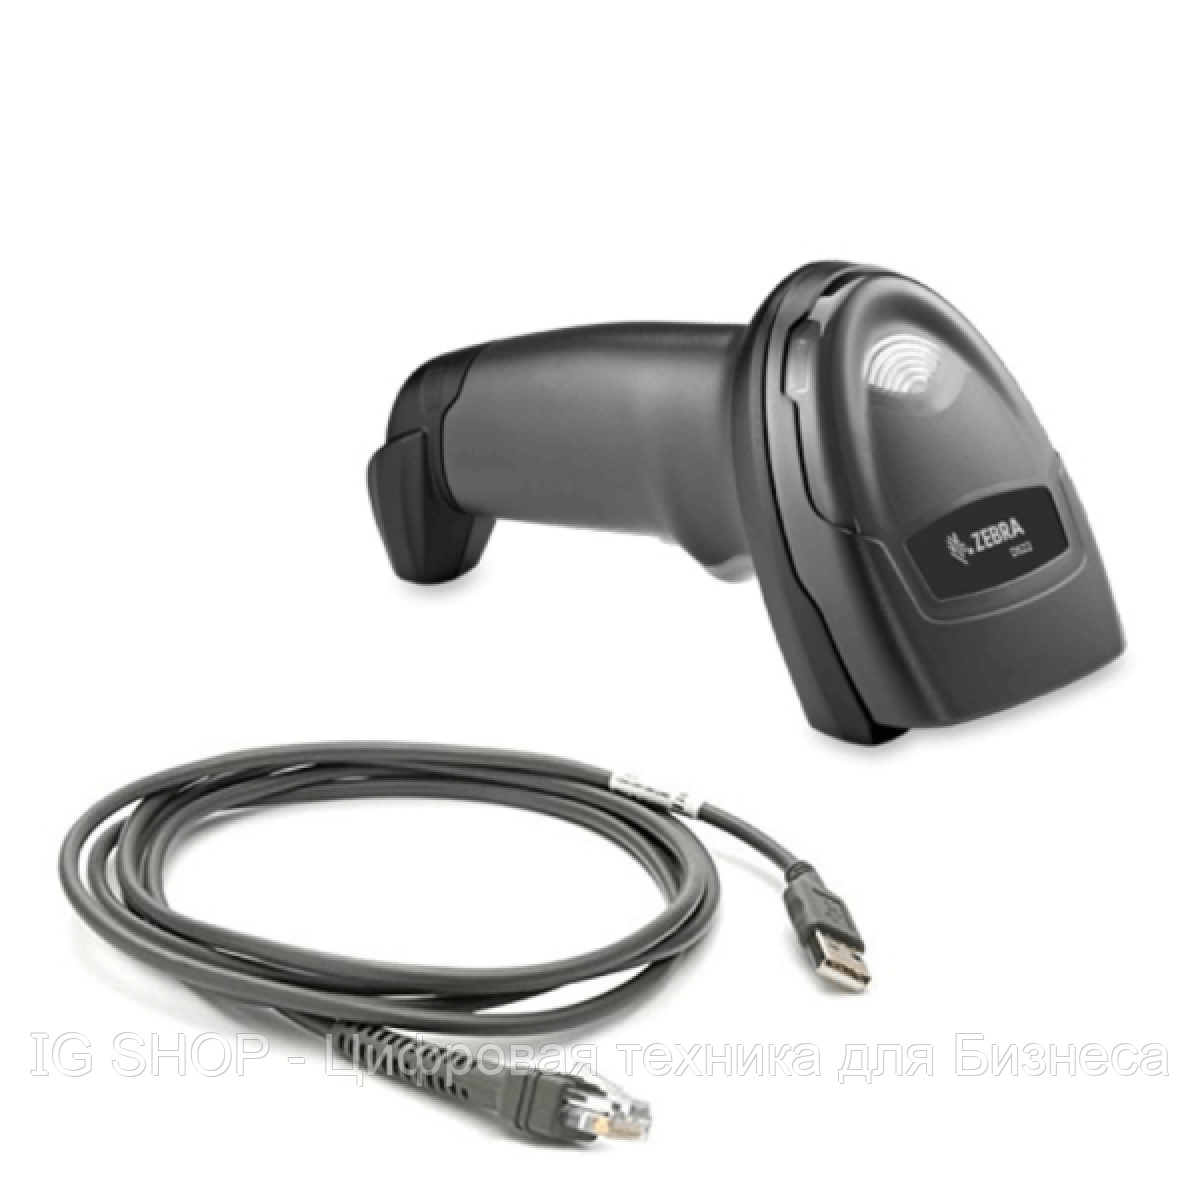 Сканер штрихкодов Zebra DS 2208 USB (без подставки)